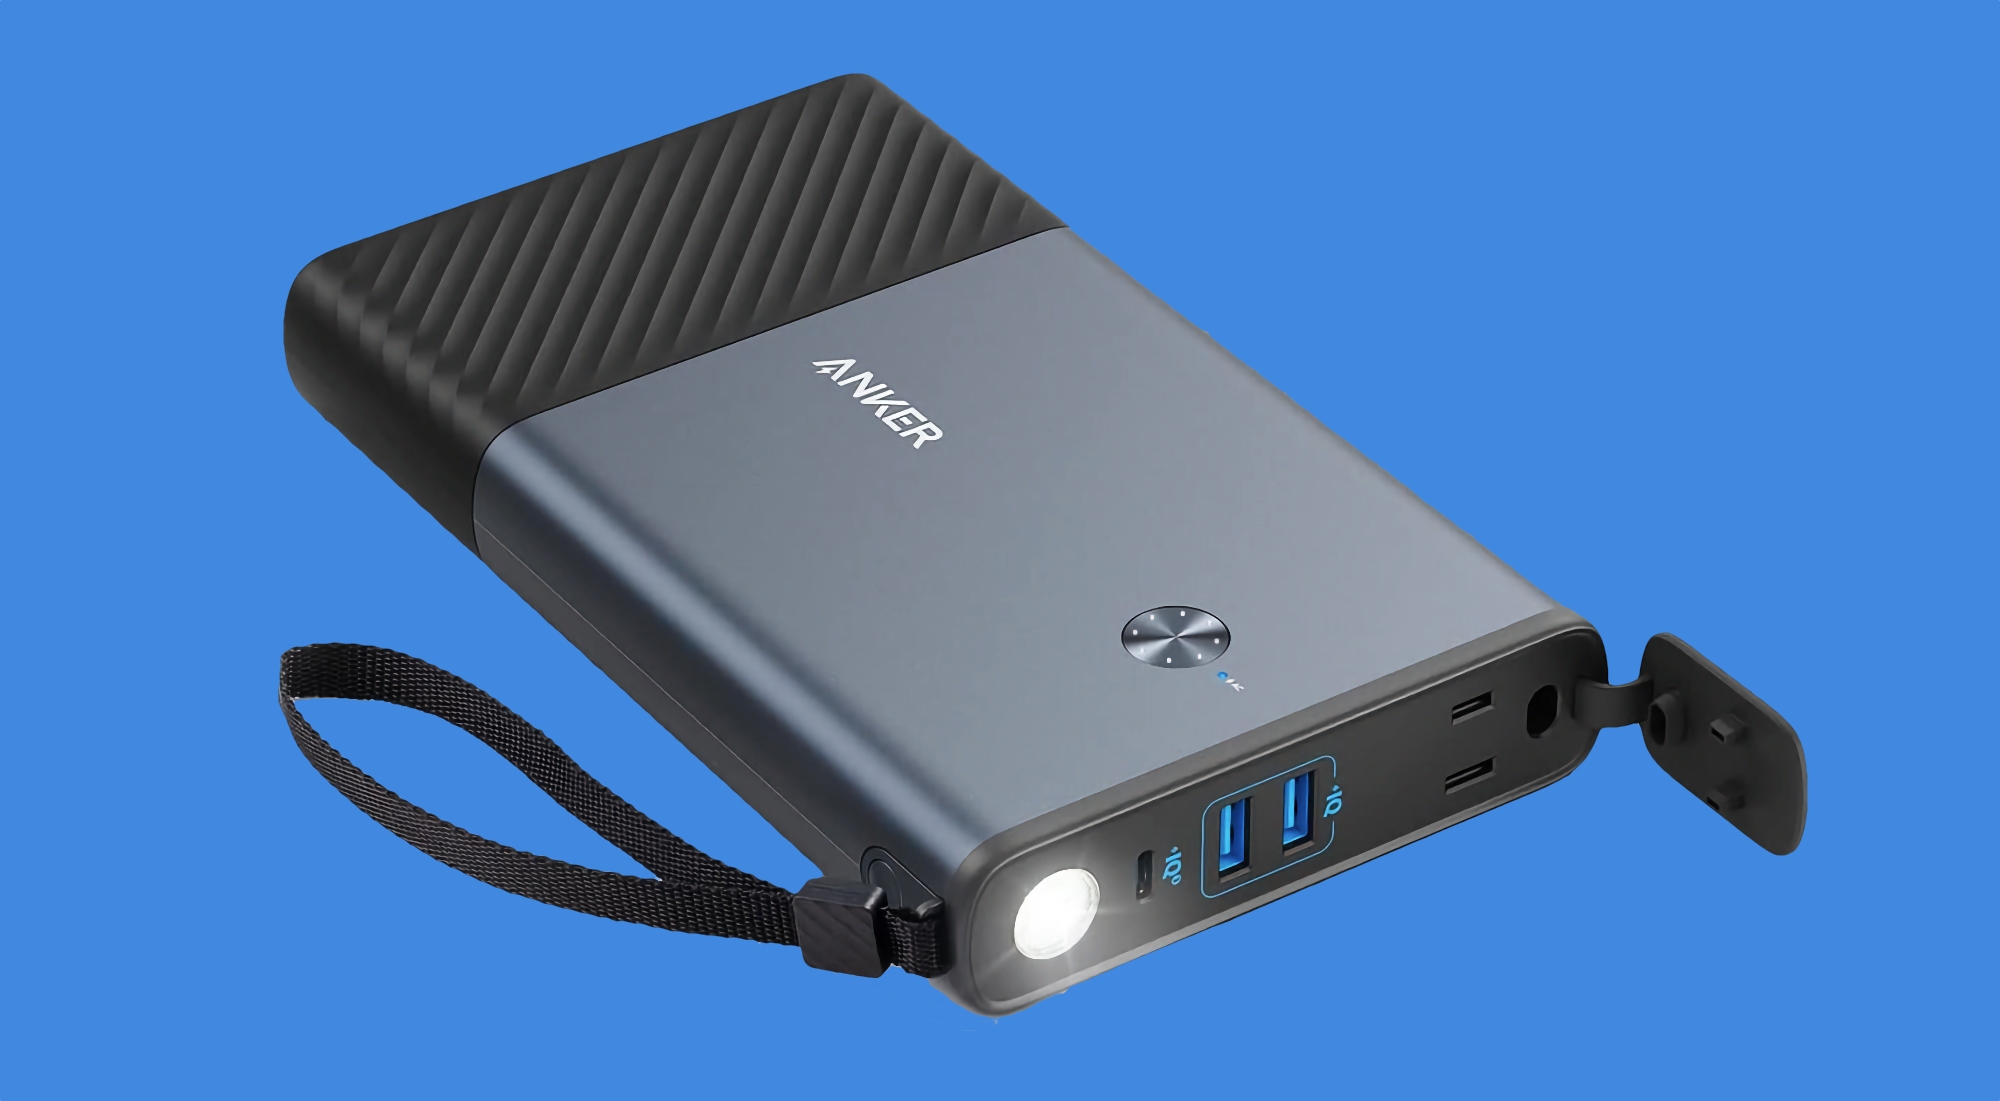 Anker 511 PowerHouse con 24.000 mAh, toma de 100W, puertos USB de hasta 45W y linterna integrada está de oferta en Amazon por 70€ de descuento